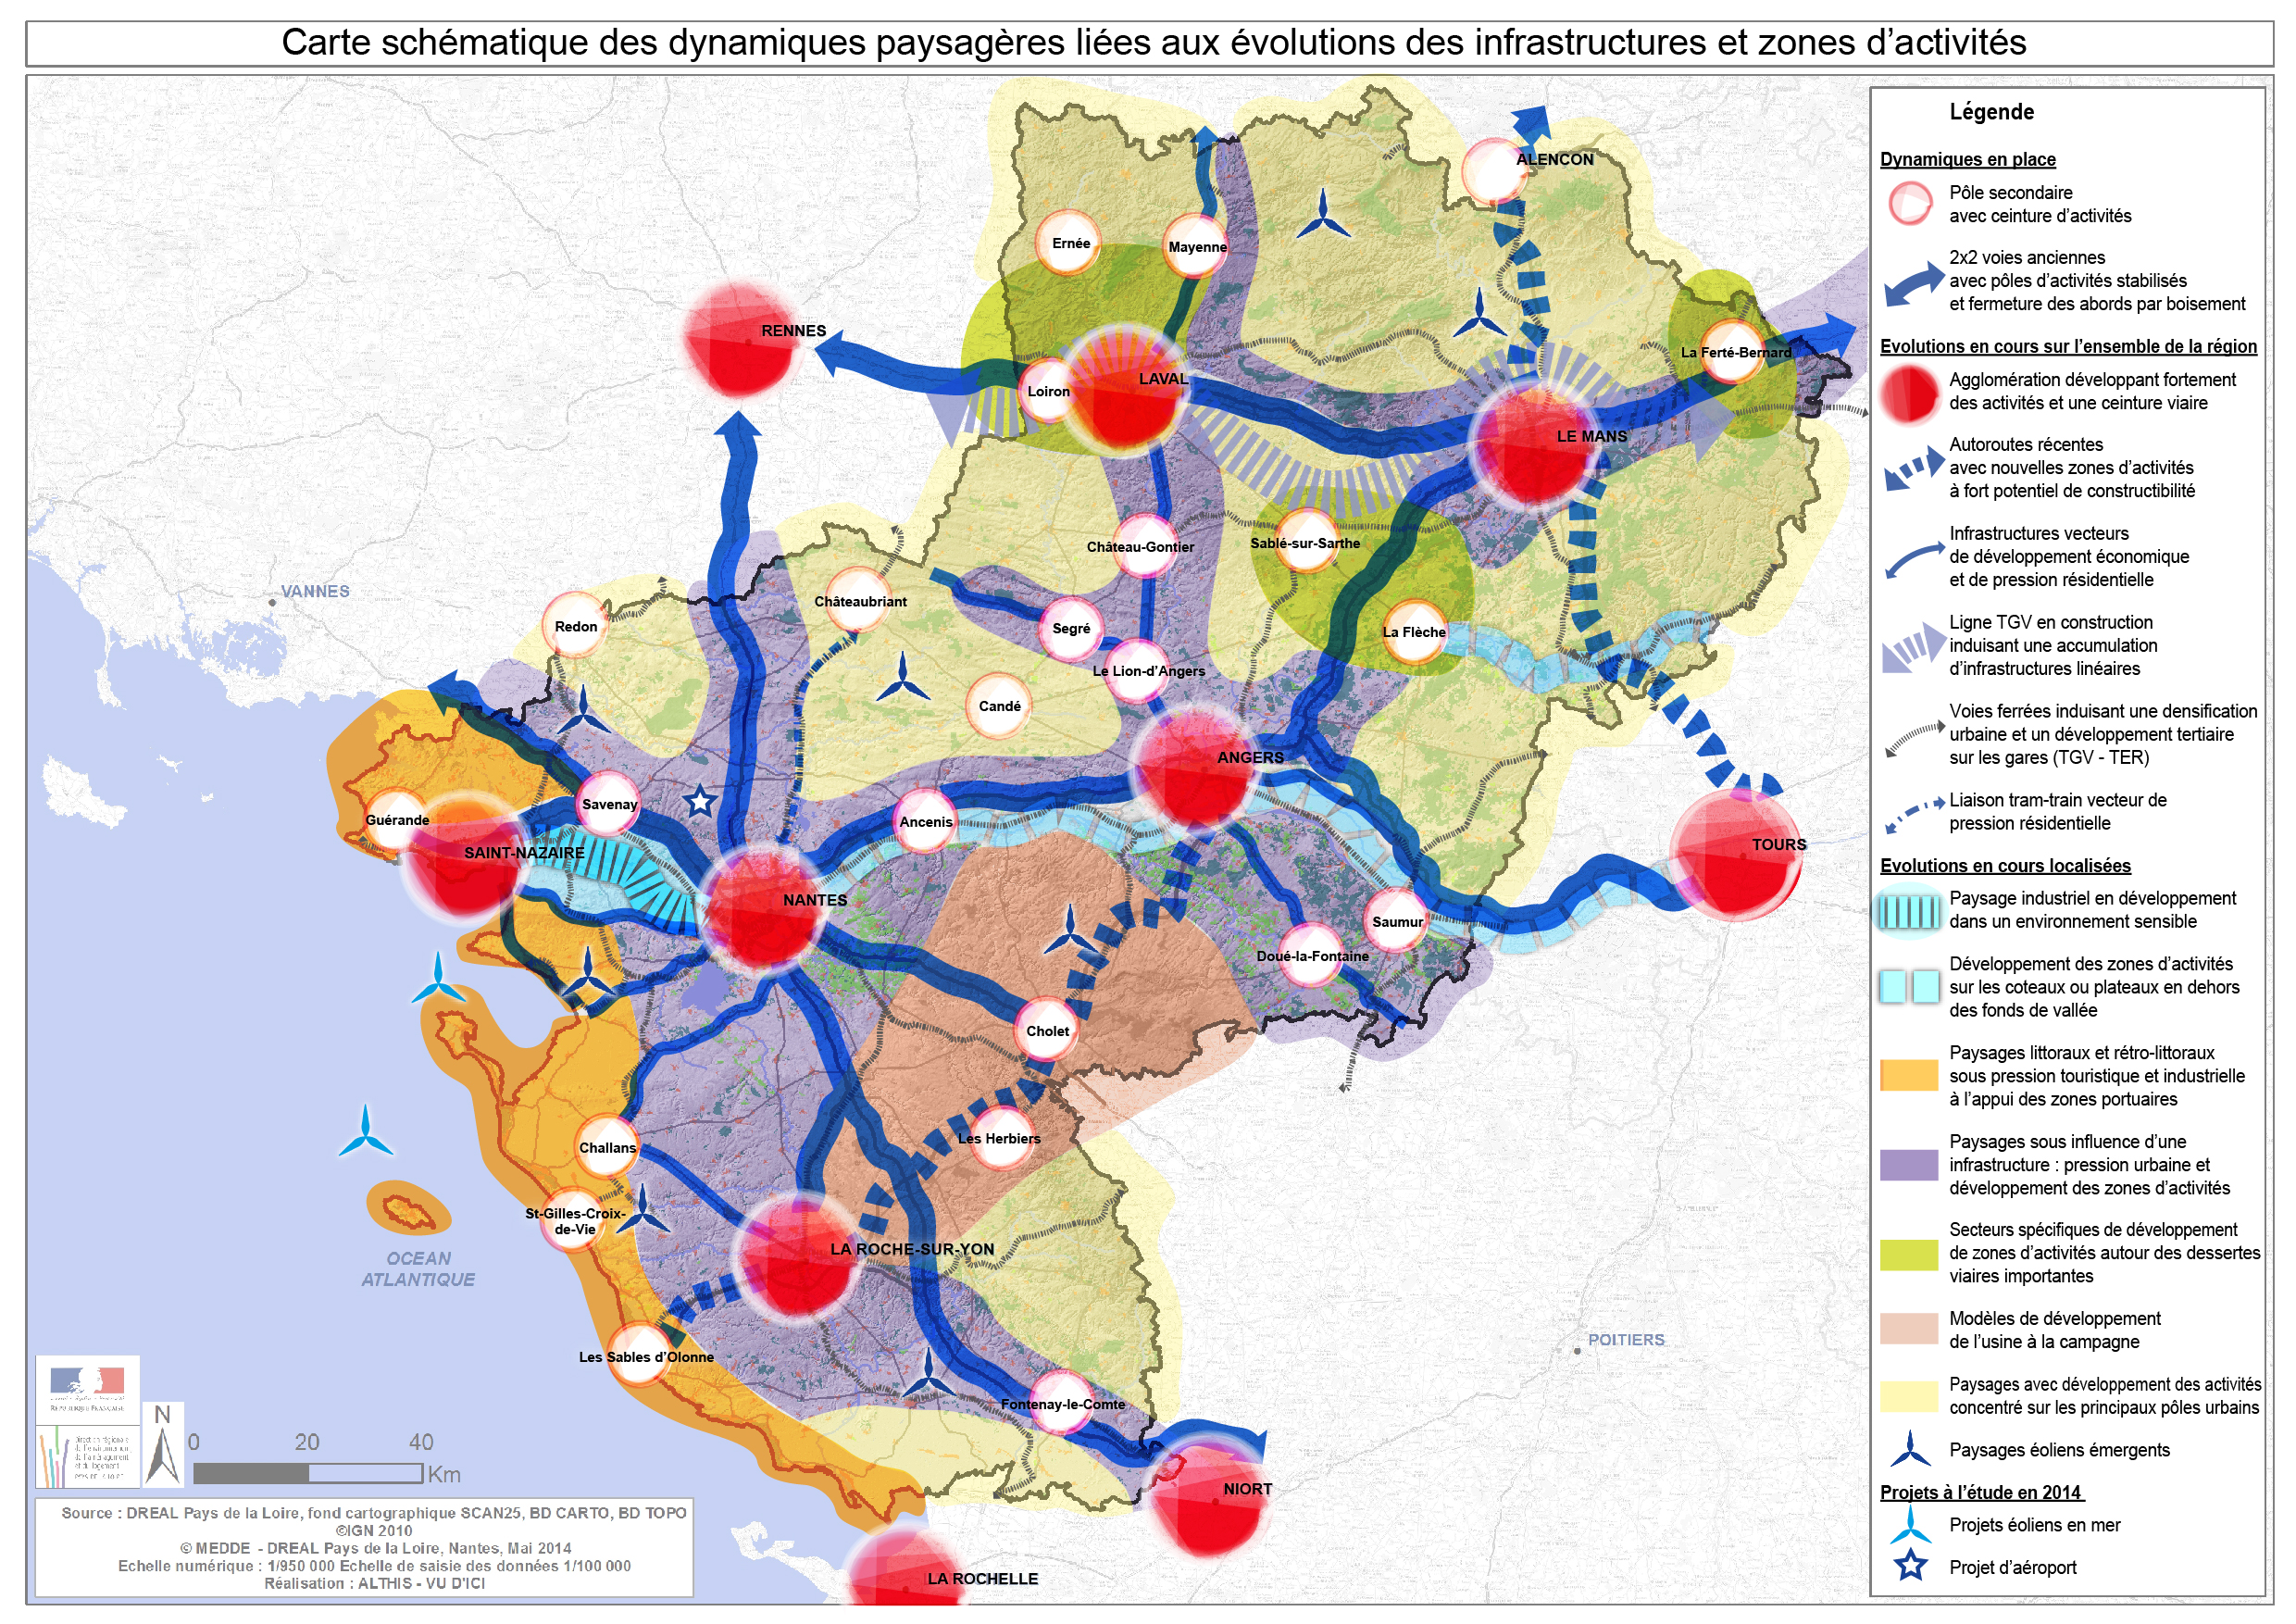 Carte schématique des dynamiques paysagères liées aux évolutions des infrastructures et zones d'activités en grand format (nouvelle fenêtre)